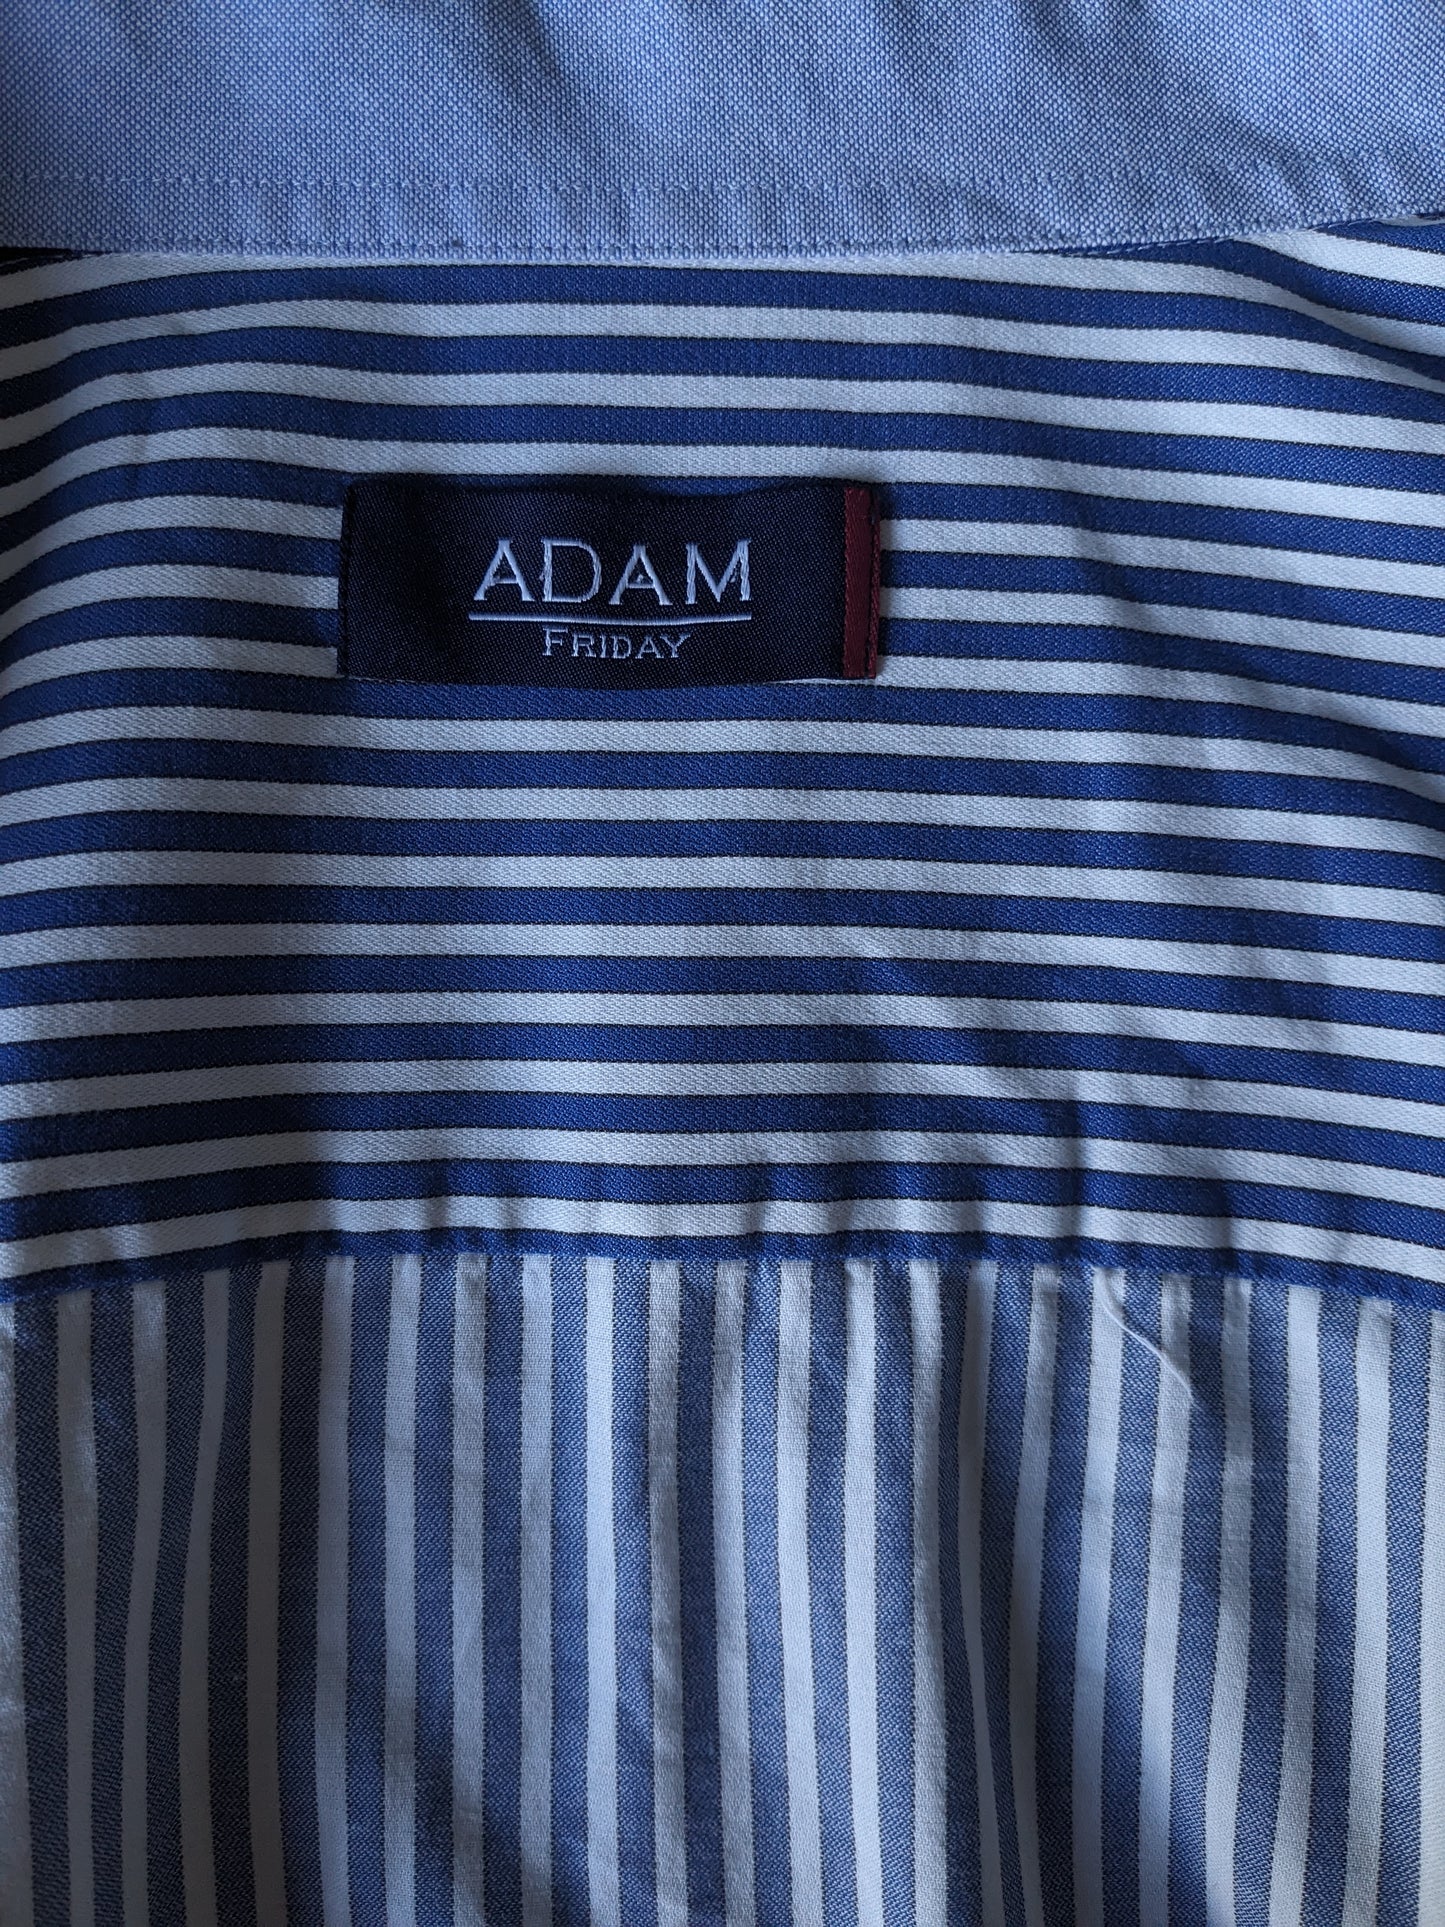 Adam Friday Shirt. Blau weiß gestreift. Größe 3xl / xxxl.